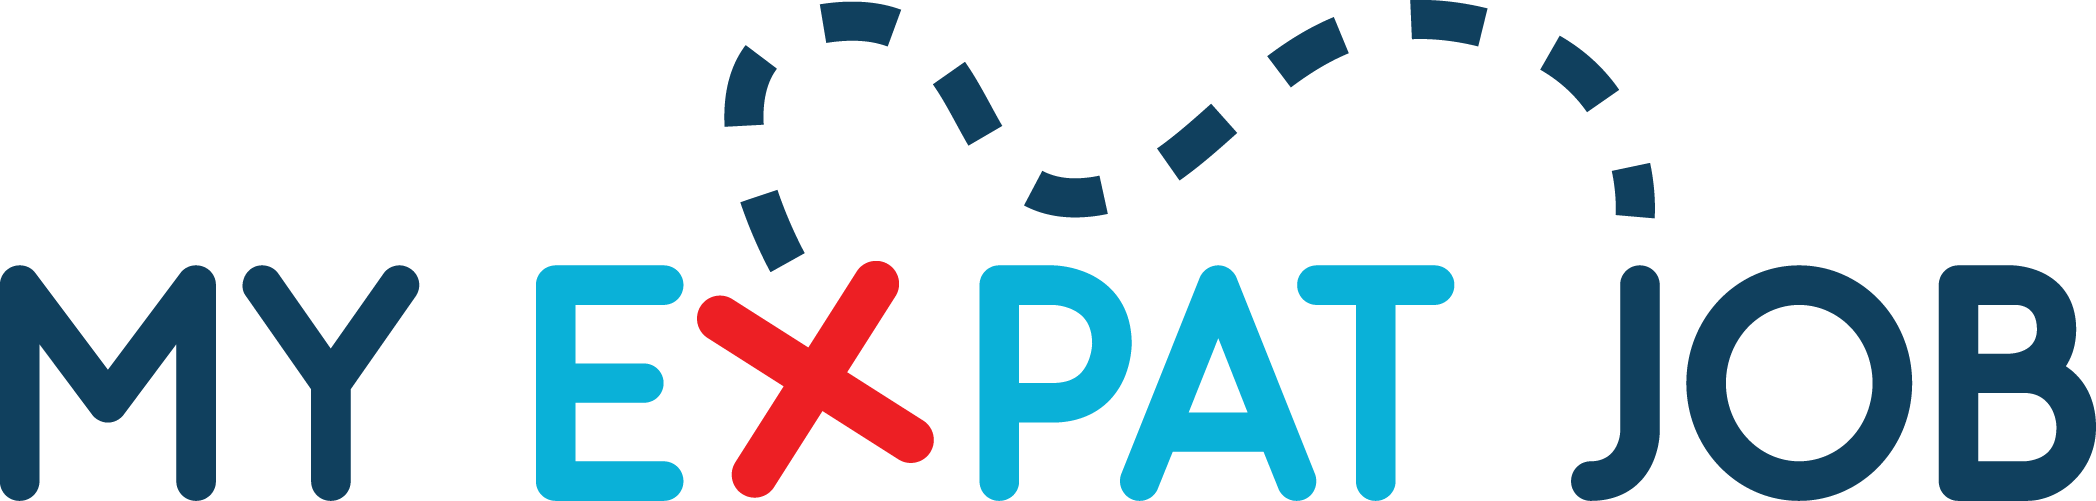 Logo Myexpatjob - Employment (2096x501)